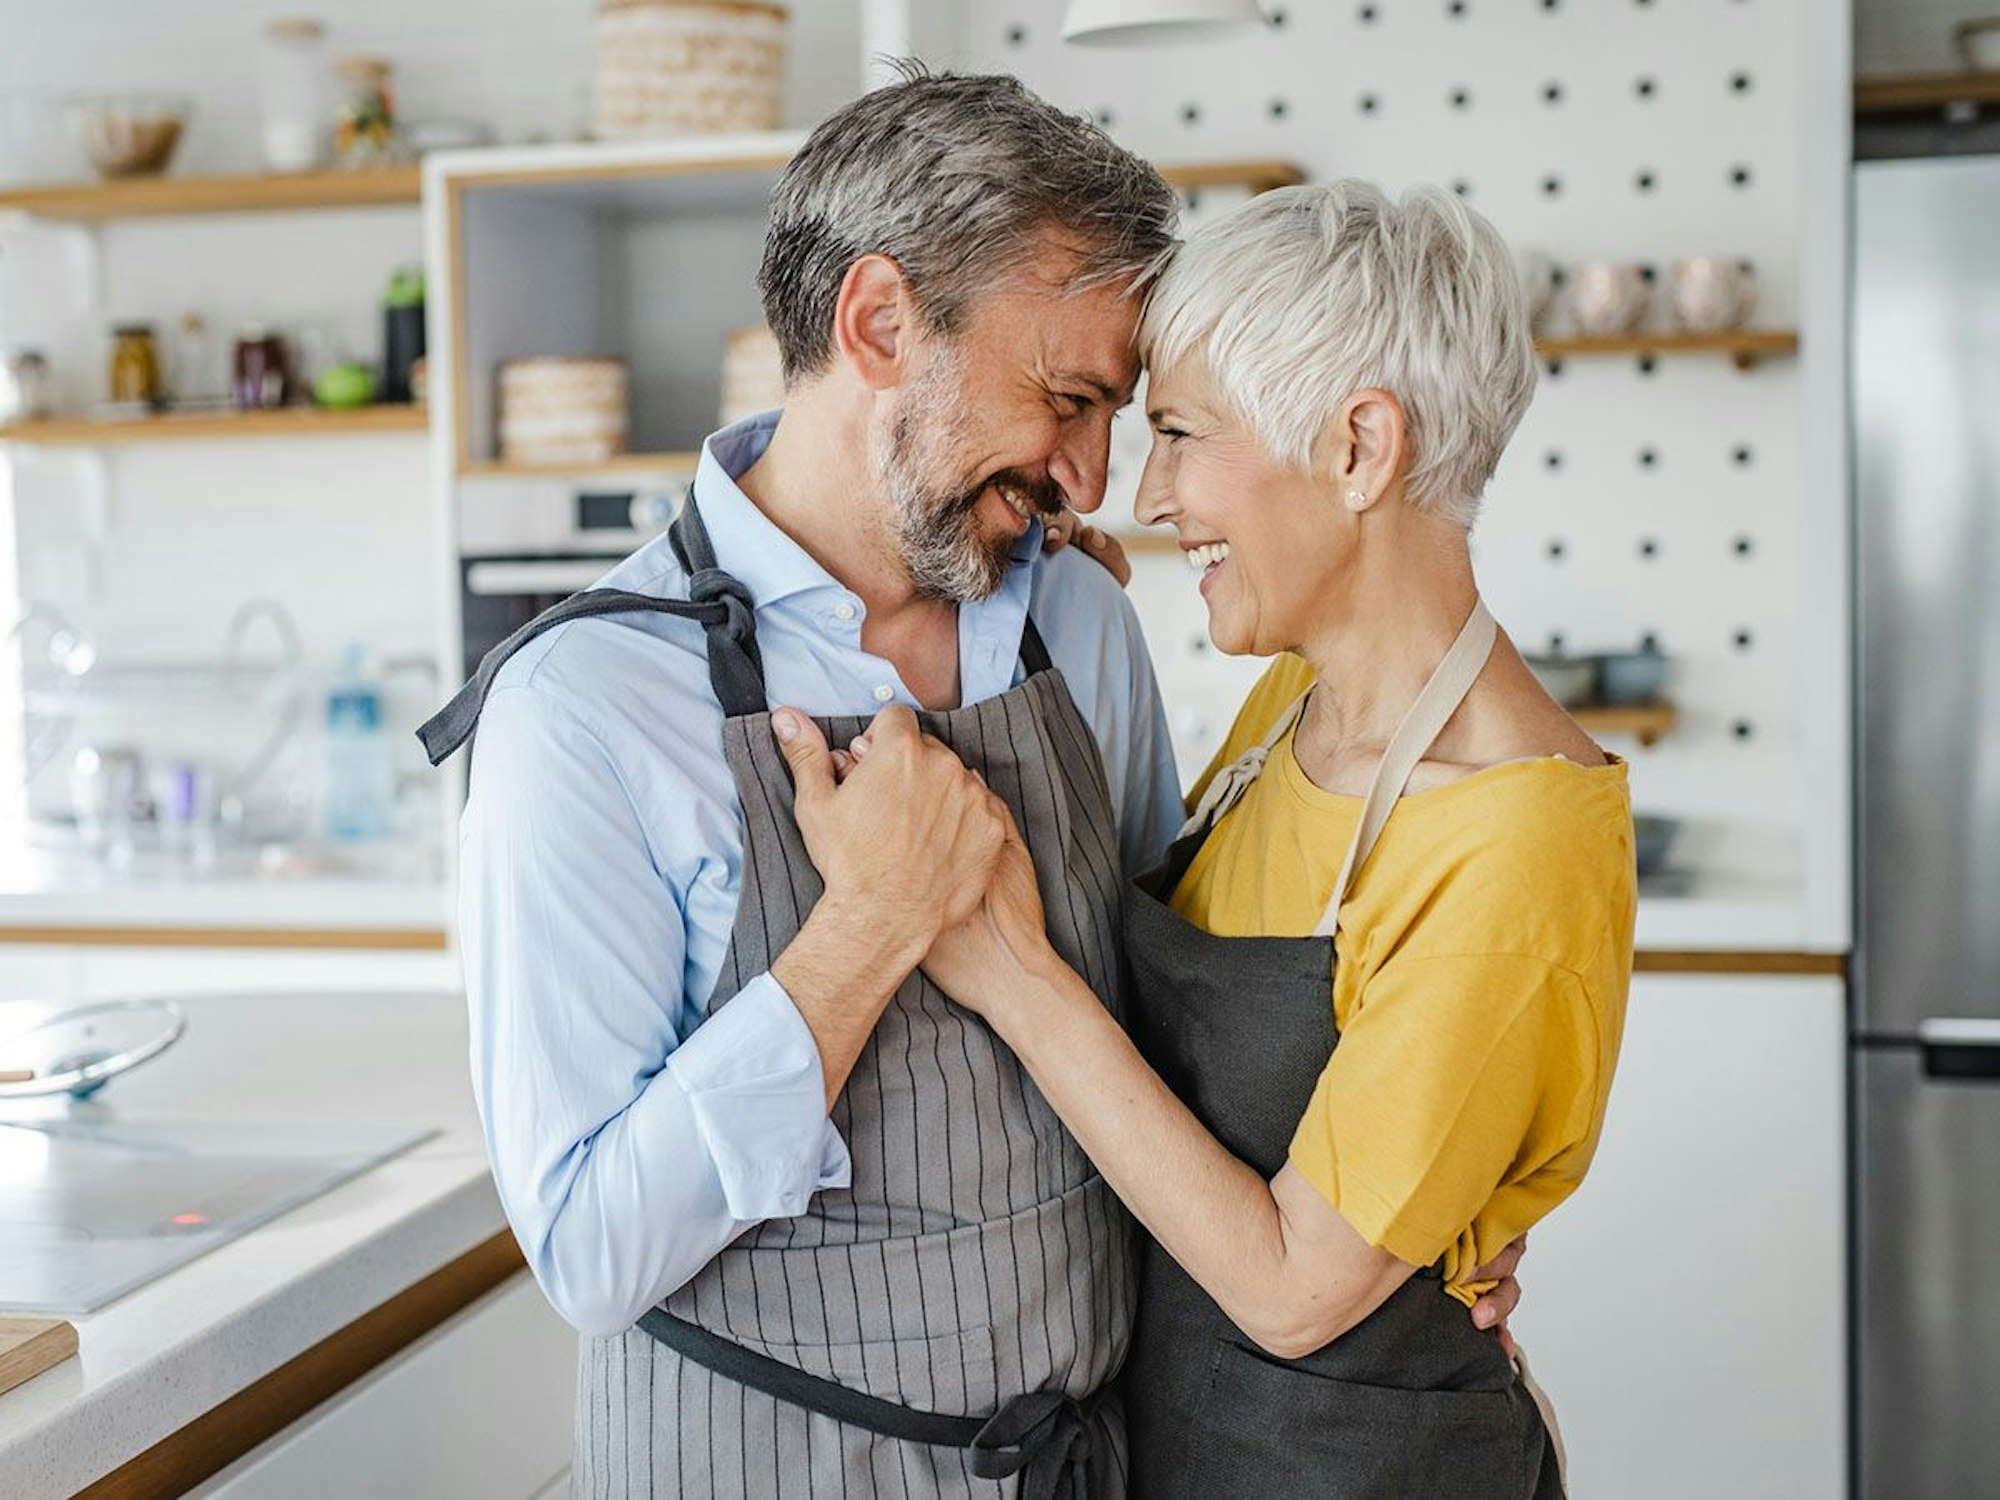 Romantisches reifes Paar, tanzend in der Küche. Bild zum Ü50 Online Dating Artikel.